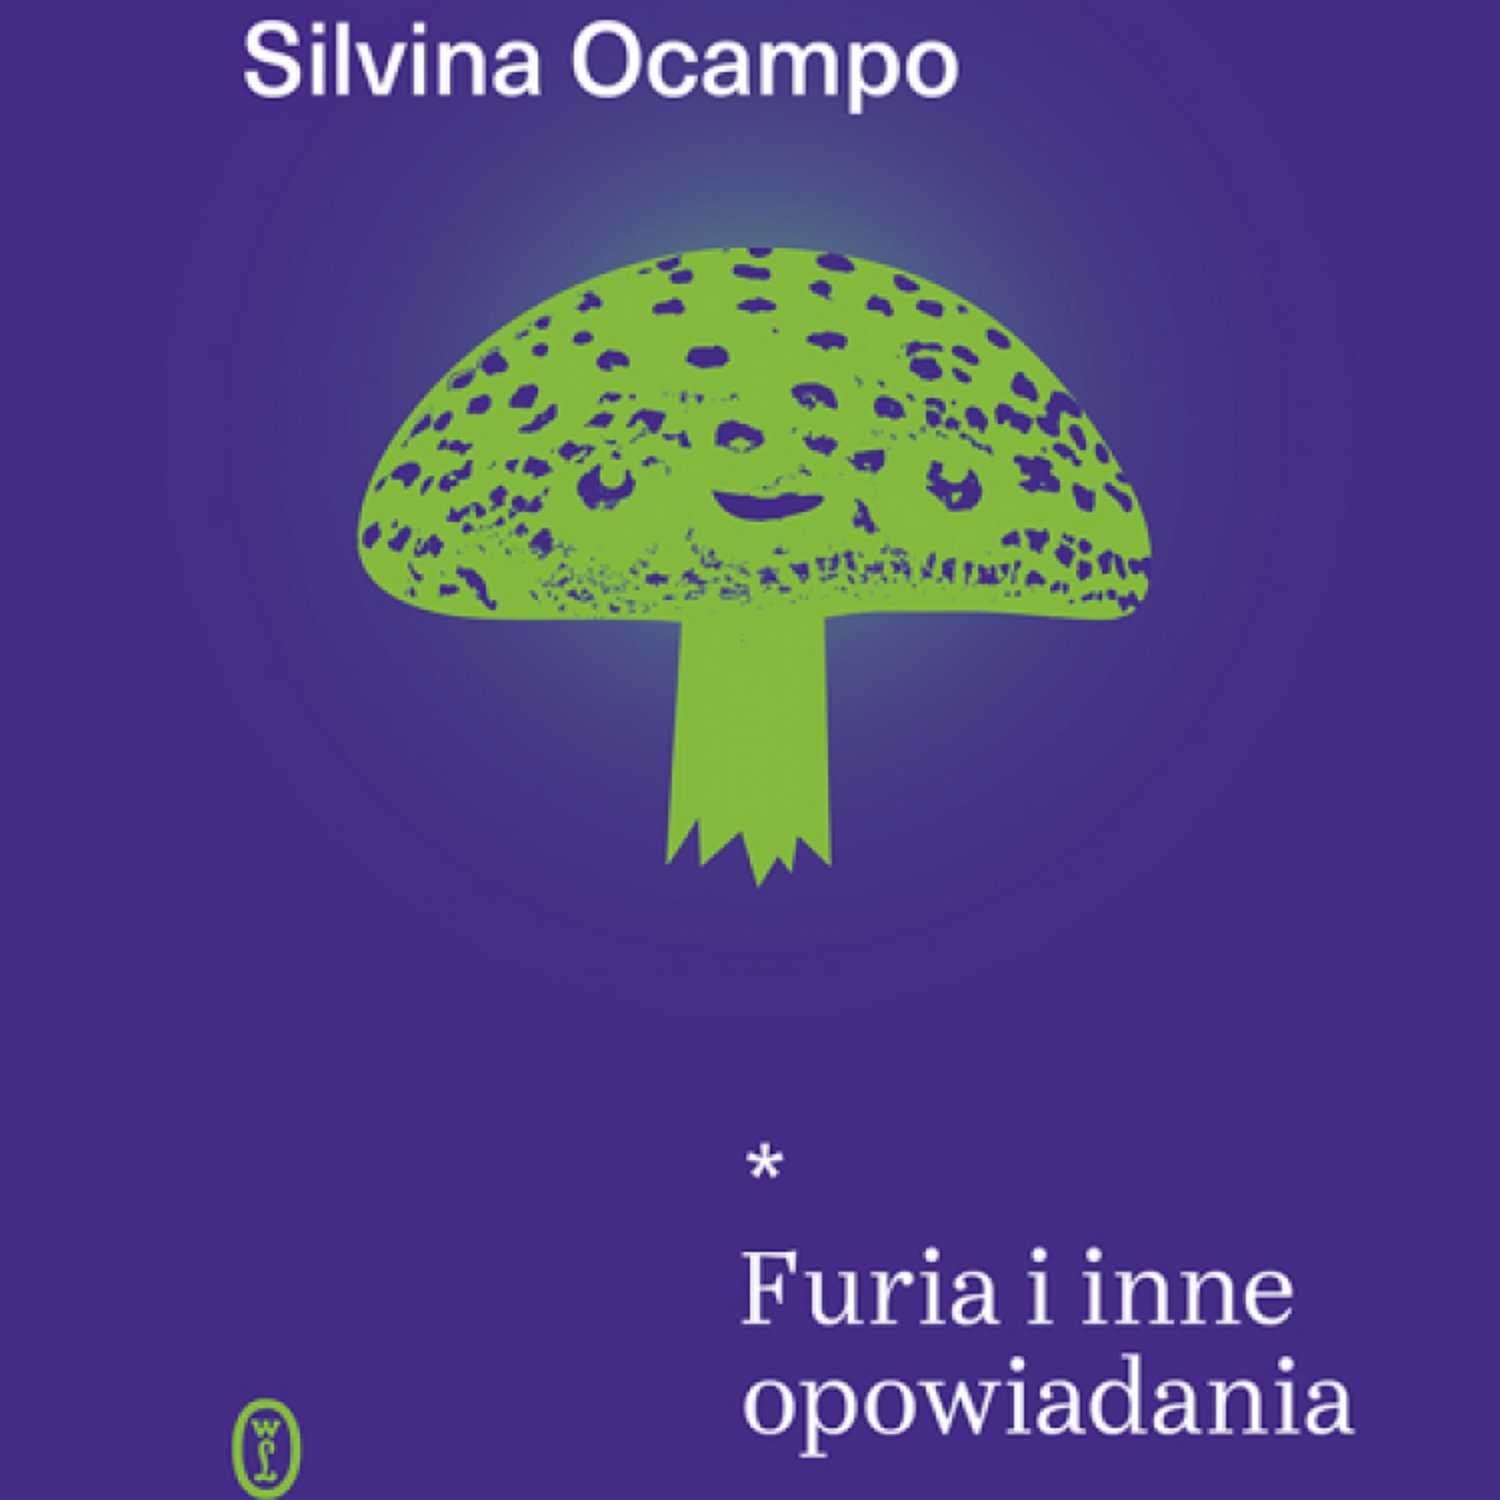 Literatura niesamowitości - po raz pierwszy w Polsce ukazuje się tom opowiadań Silviny Ocampo